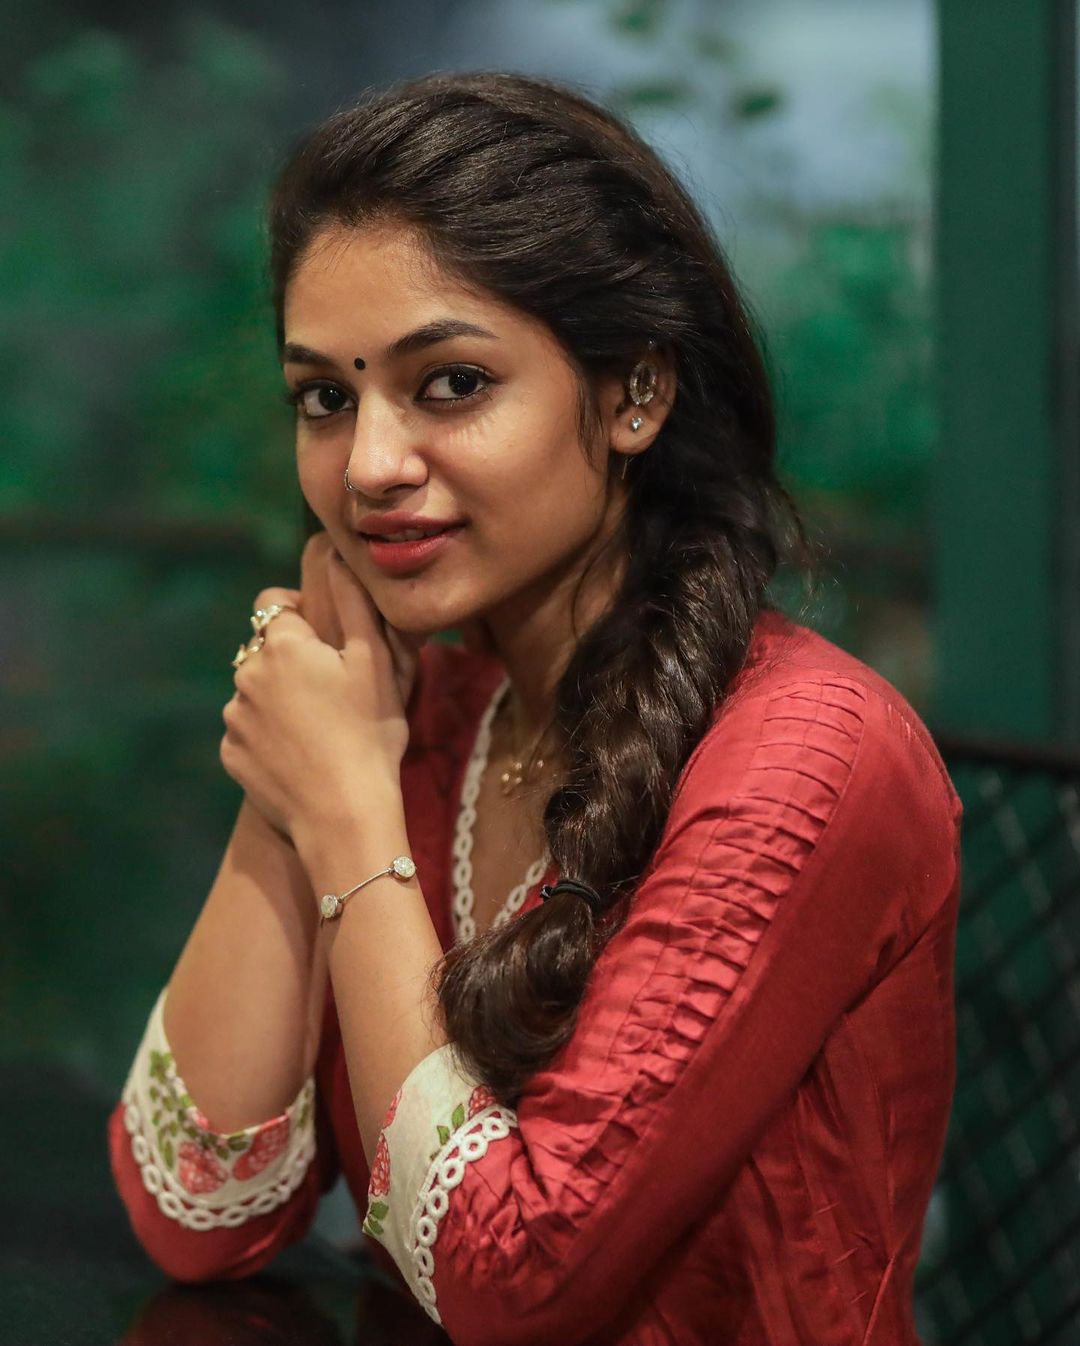 artist ivana tamil actress photos images